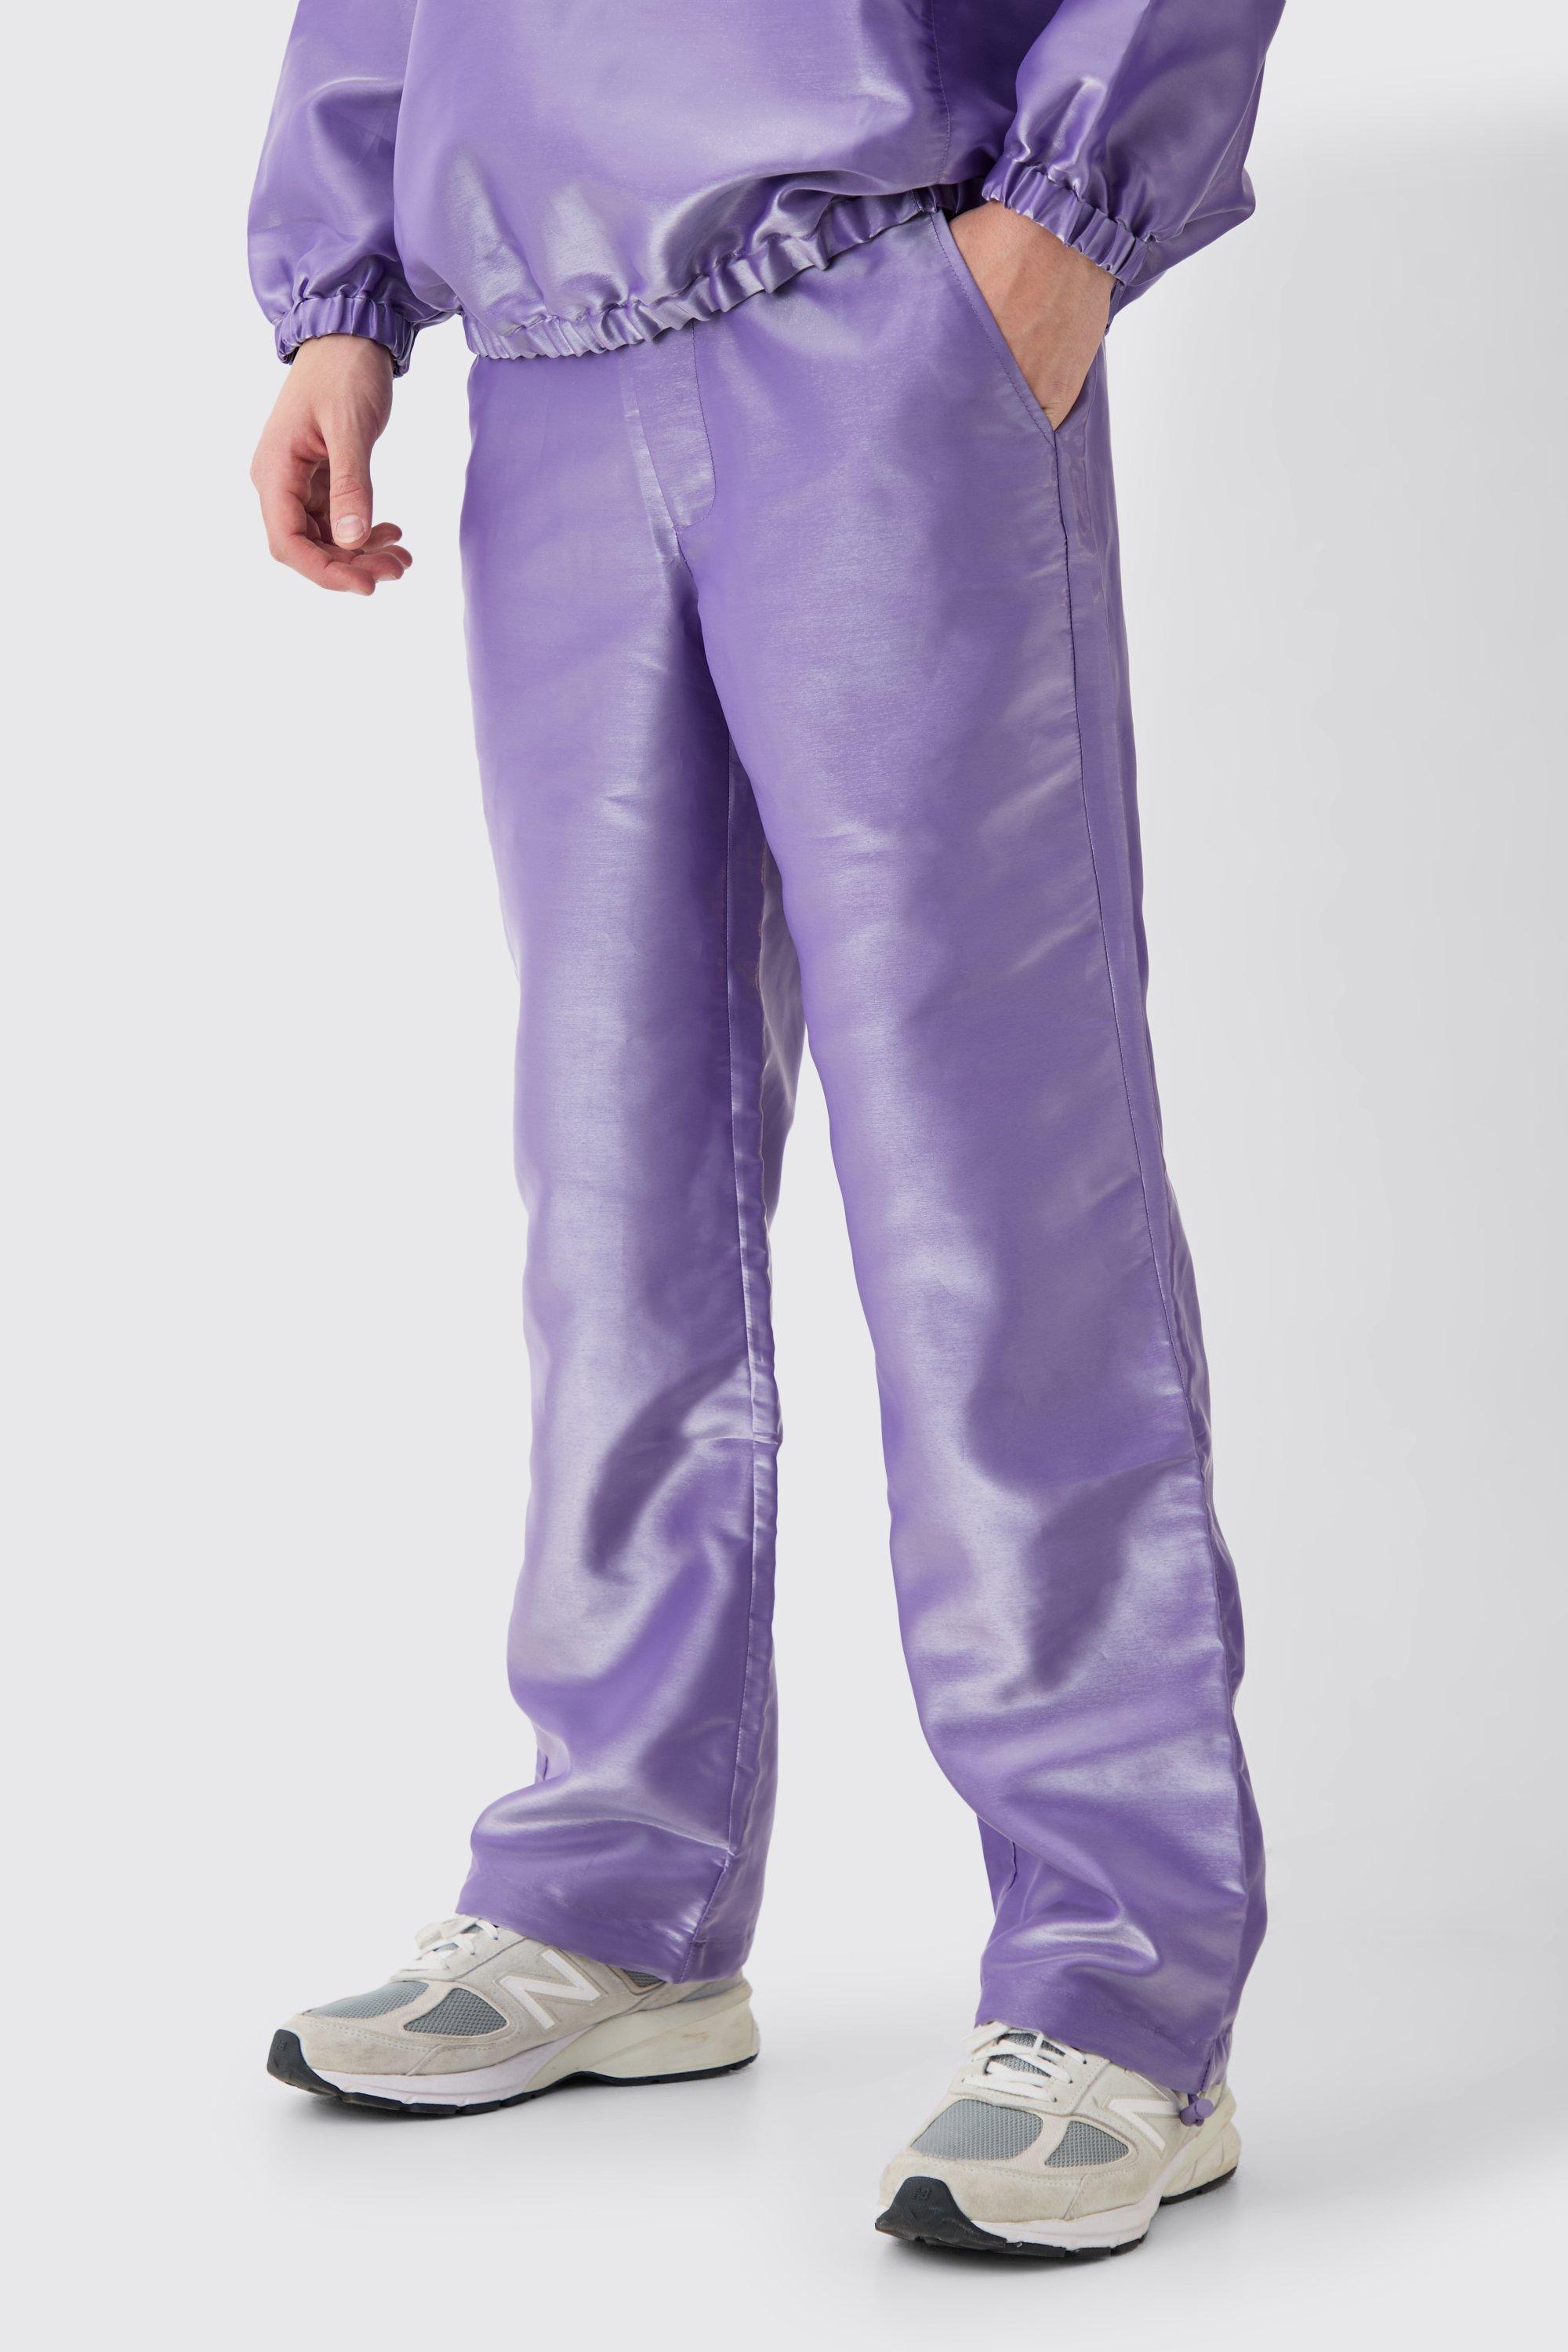 Image of Pantaloni Cargo in nylon metallizzato liquido, Purple